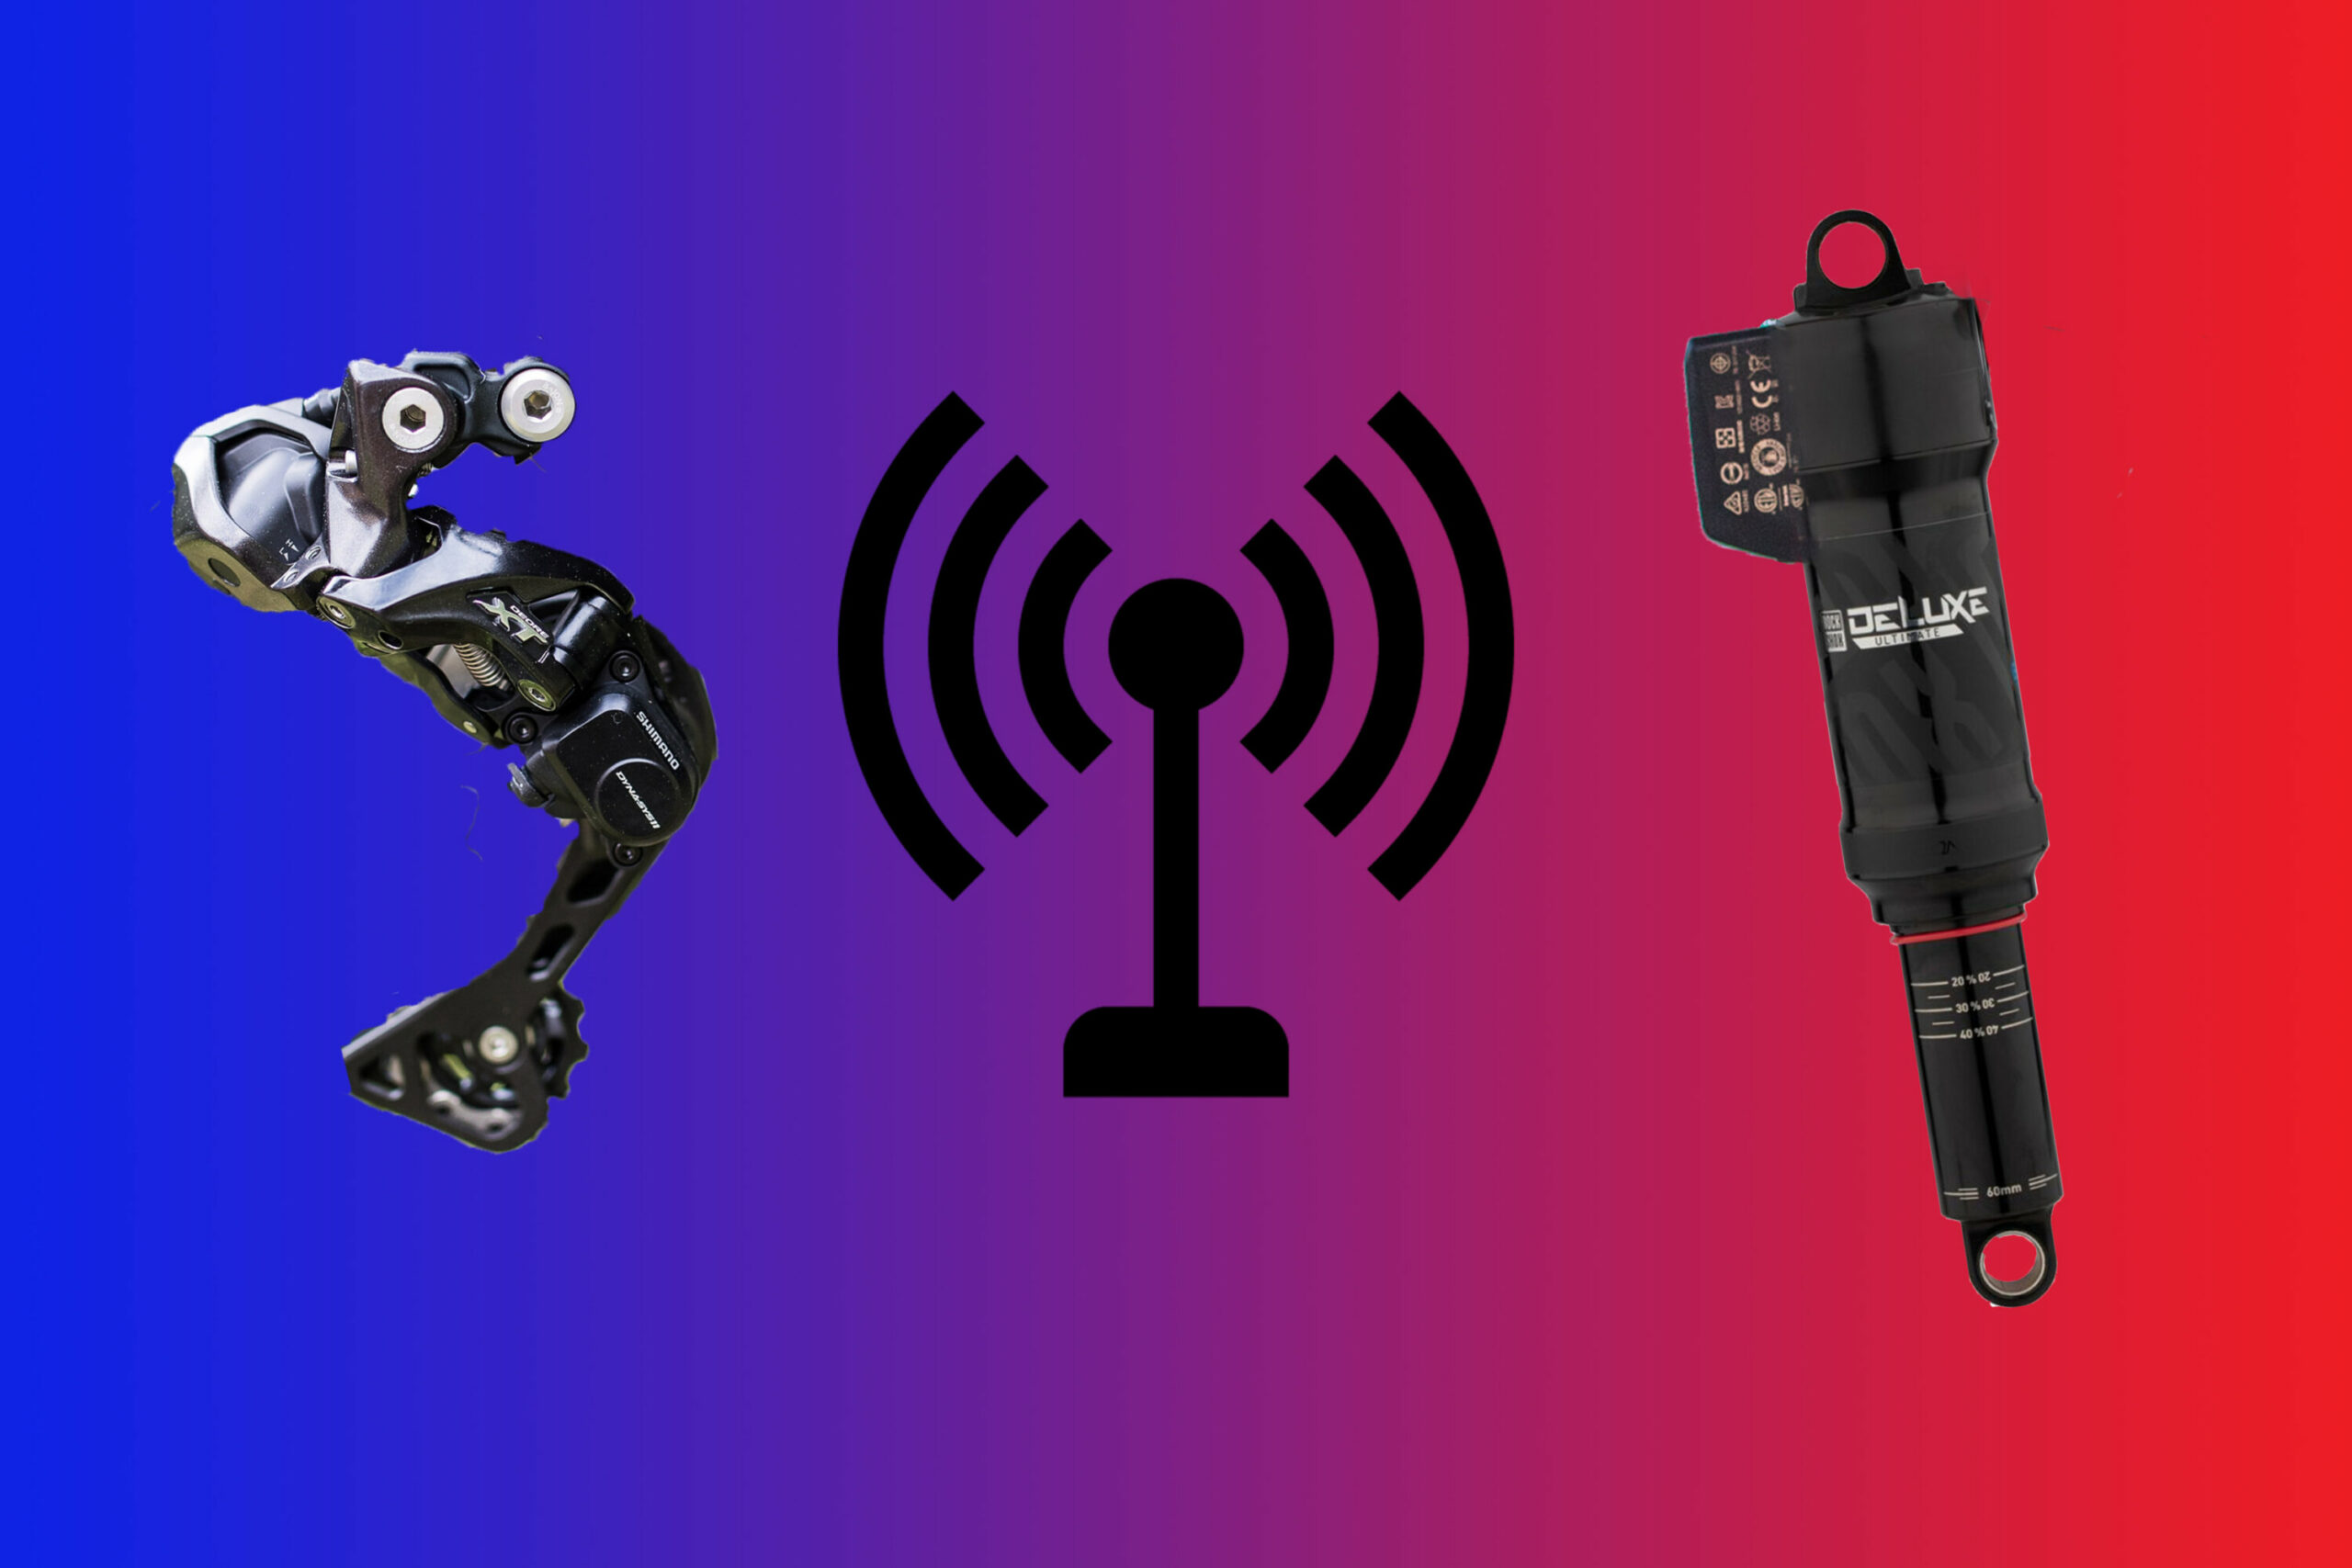 Neue Komponenten von Shimano und SRAM?: Mehr Wireless-Technologie am Bike